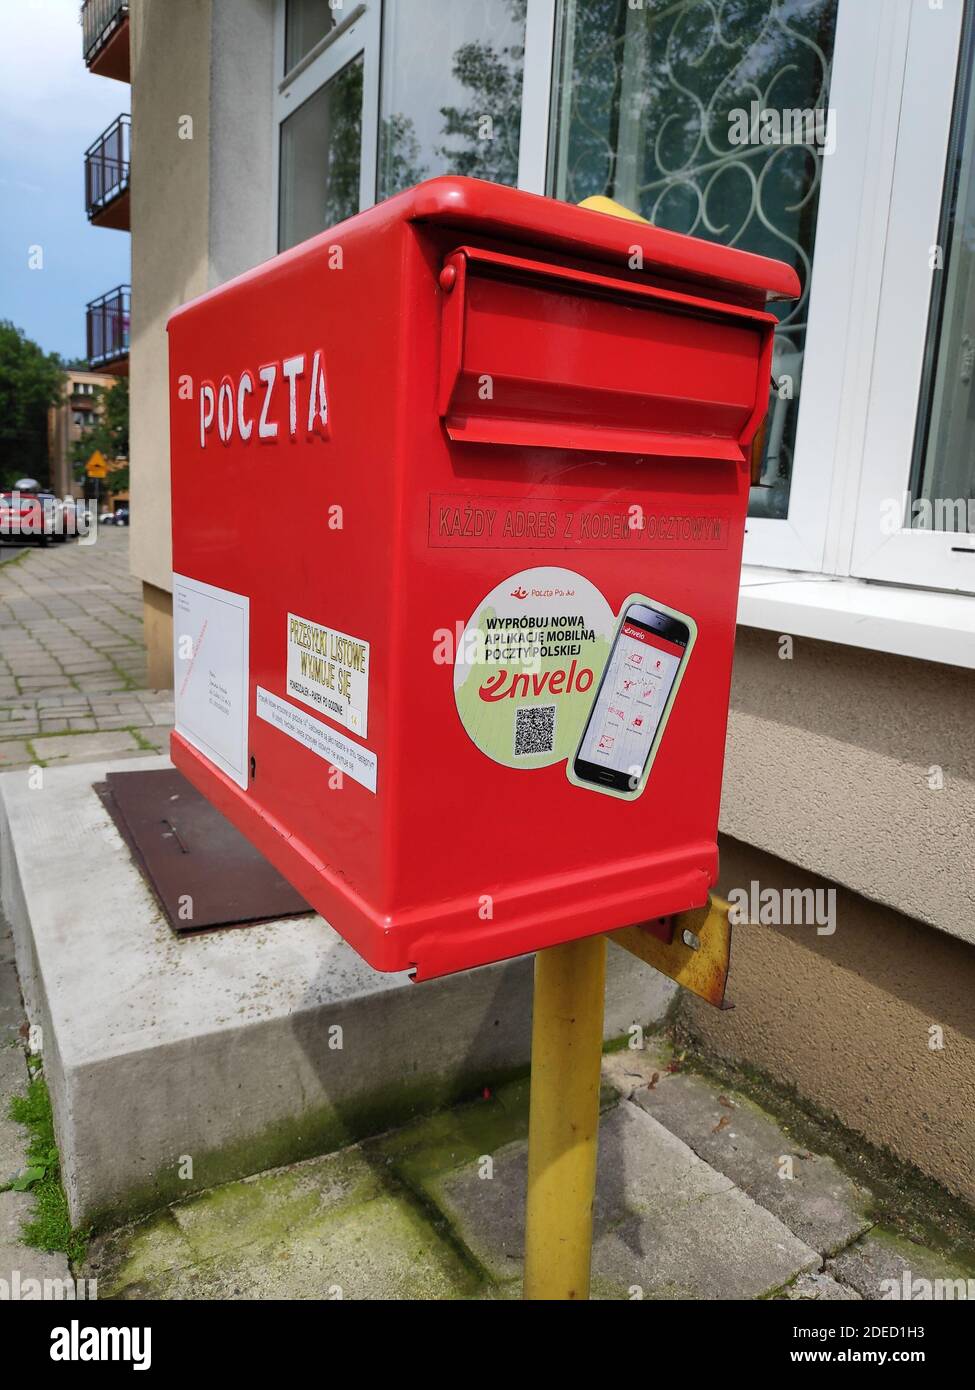 BYTOM, POLEN - 26. JUNI 2020: Öffentlicher Briefkasten in Bytom, Polen.  Poczta Polska ist der nationale Postbetreiber in Polen Stockfotografie -  Alamy